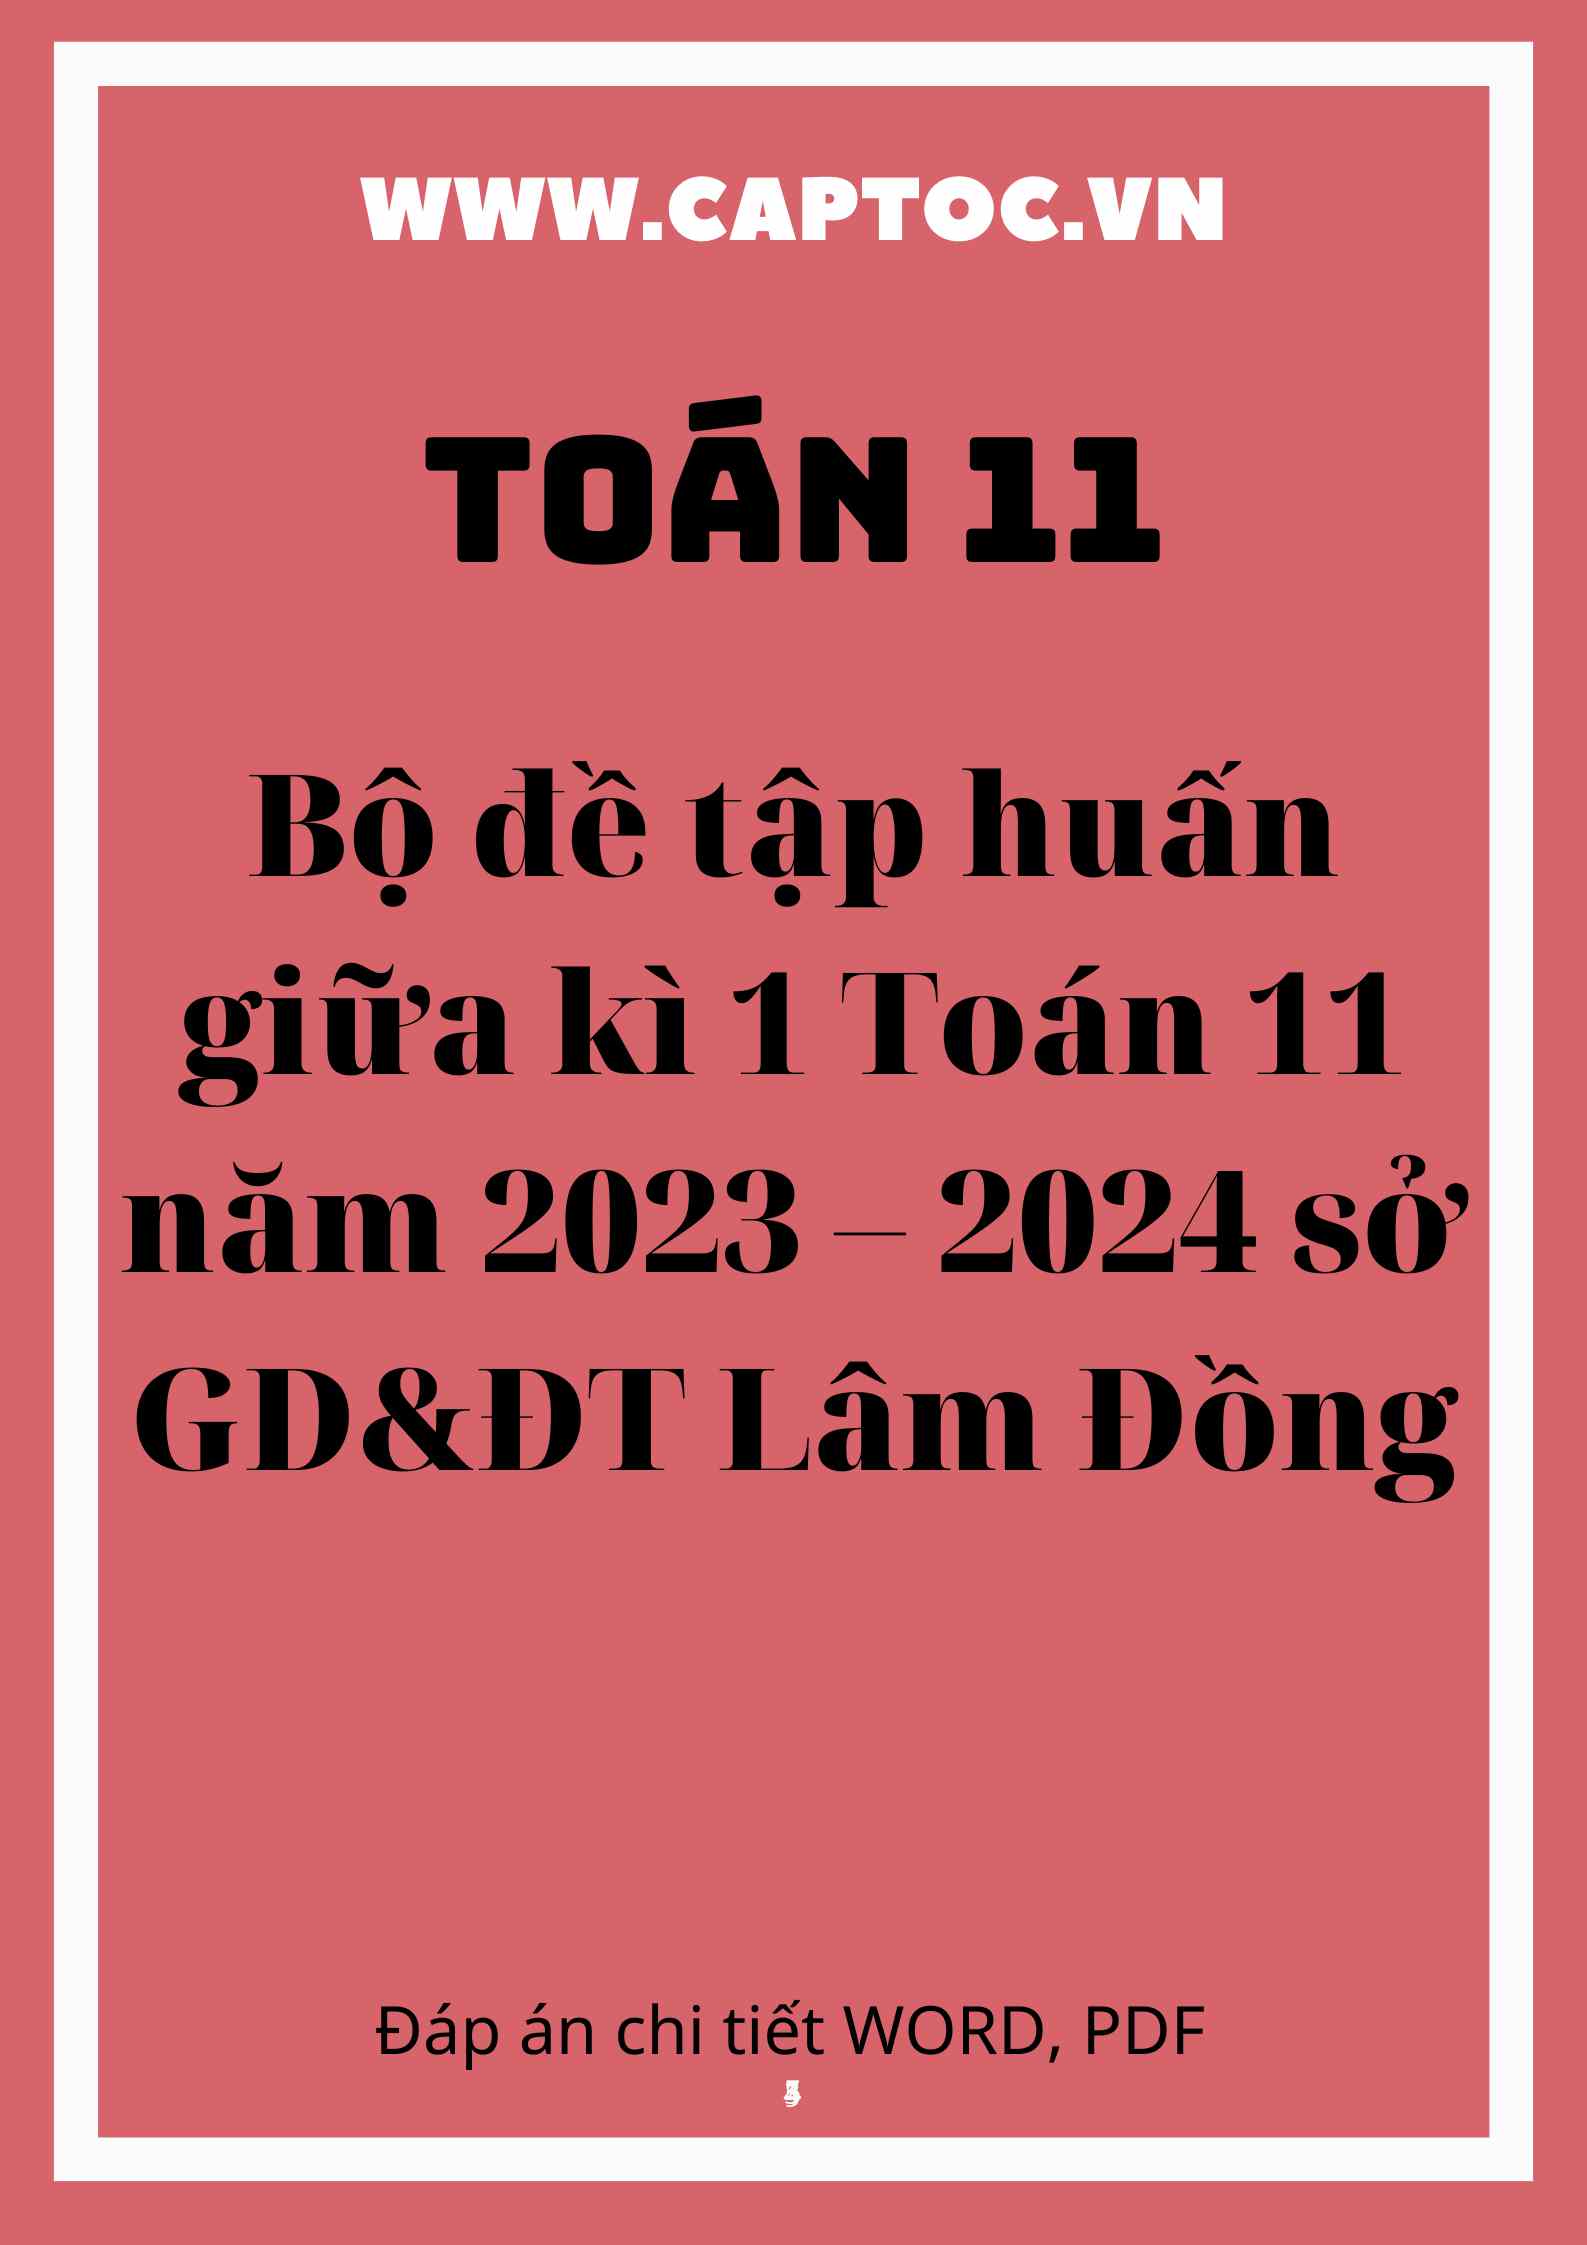 Bộ đề tập huấn giữa kì 1 Toán 11 năm 2023 – 2024 sở GD&ĐT Lâm Đồng